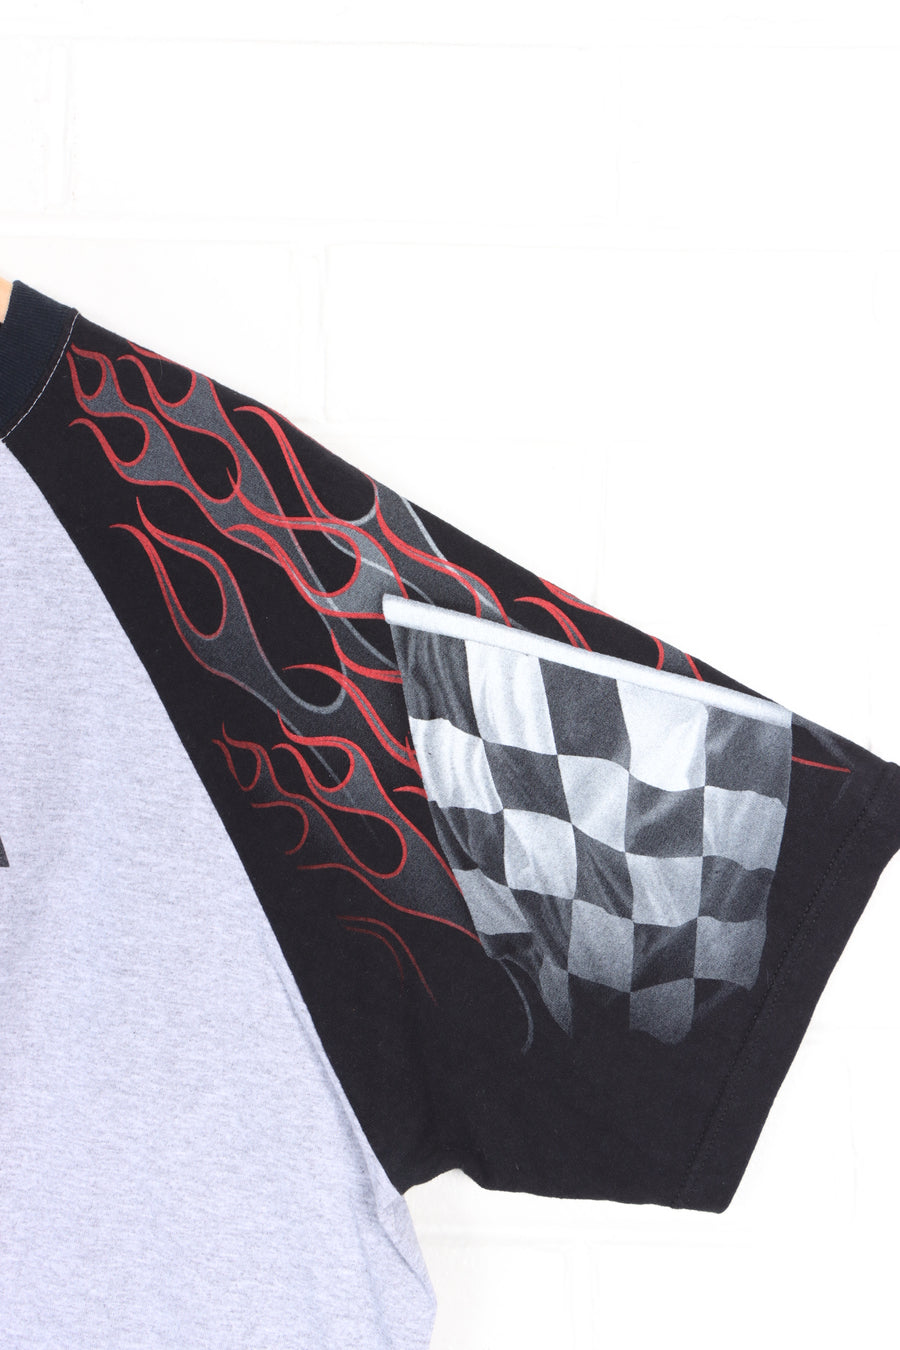 Toyota Racing Printed Sleeves Raglan T-Shirt USA Made (XL)